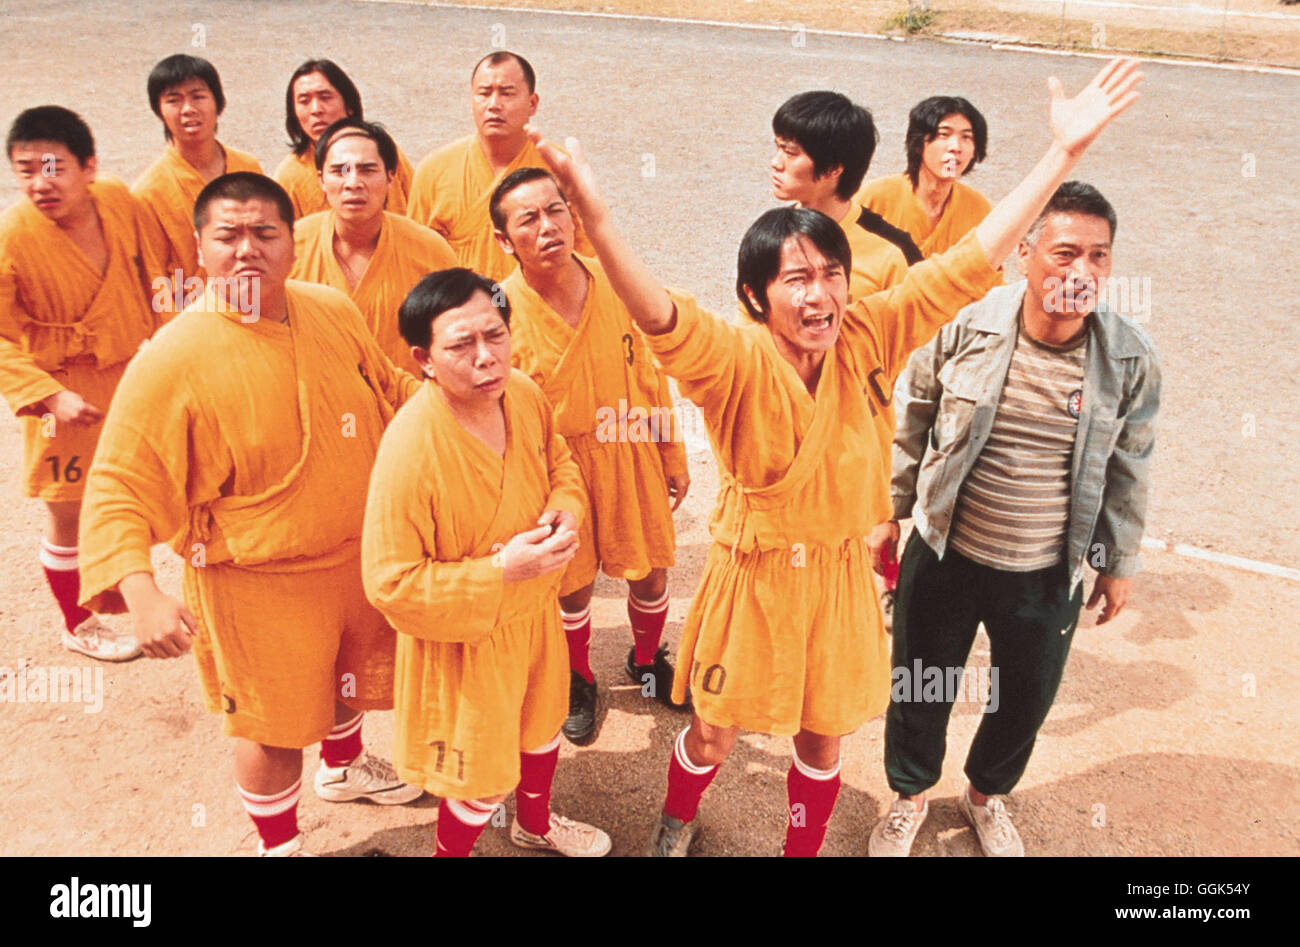 SHAOLIN KICKERS / Shaolin Soccer Hongkong 2002 / Stephen Chow Szene Regie: Stephen Chow aka. Shaolin Soccer Stock Photo